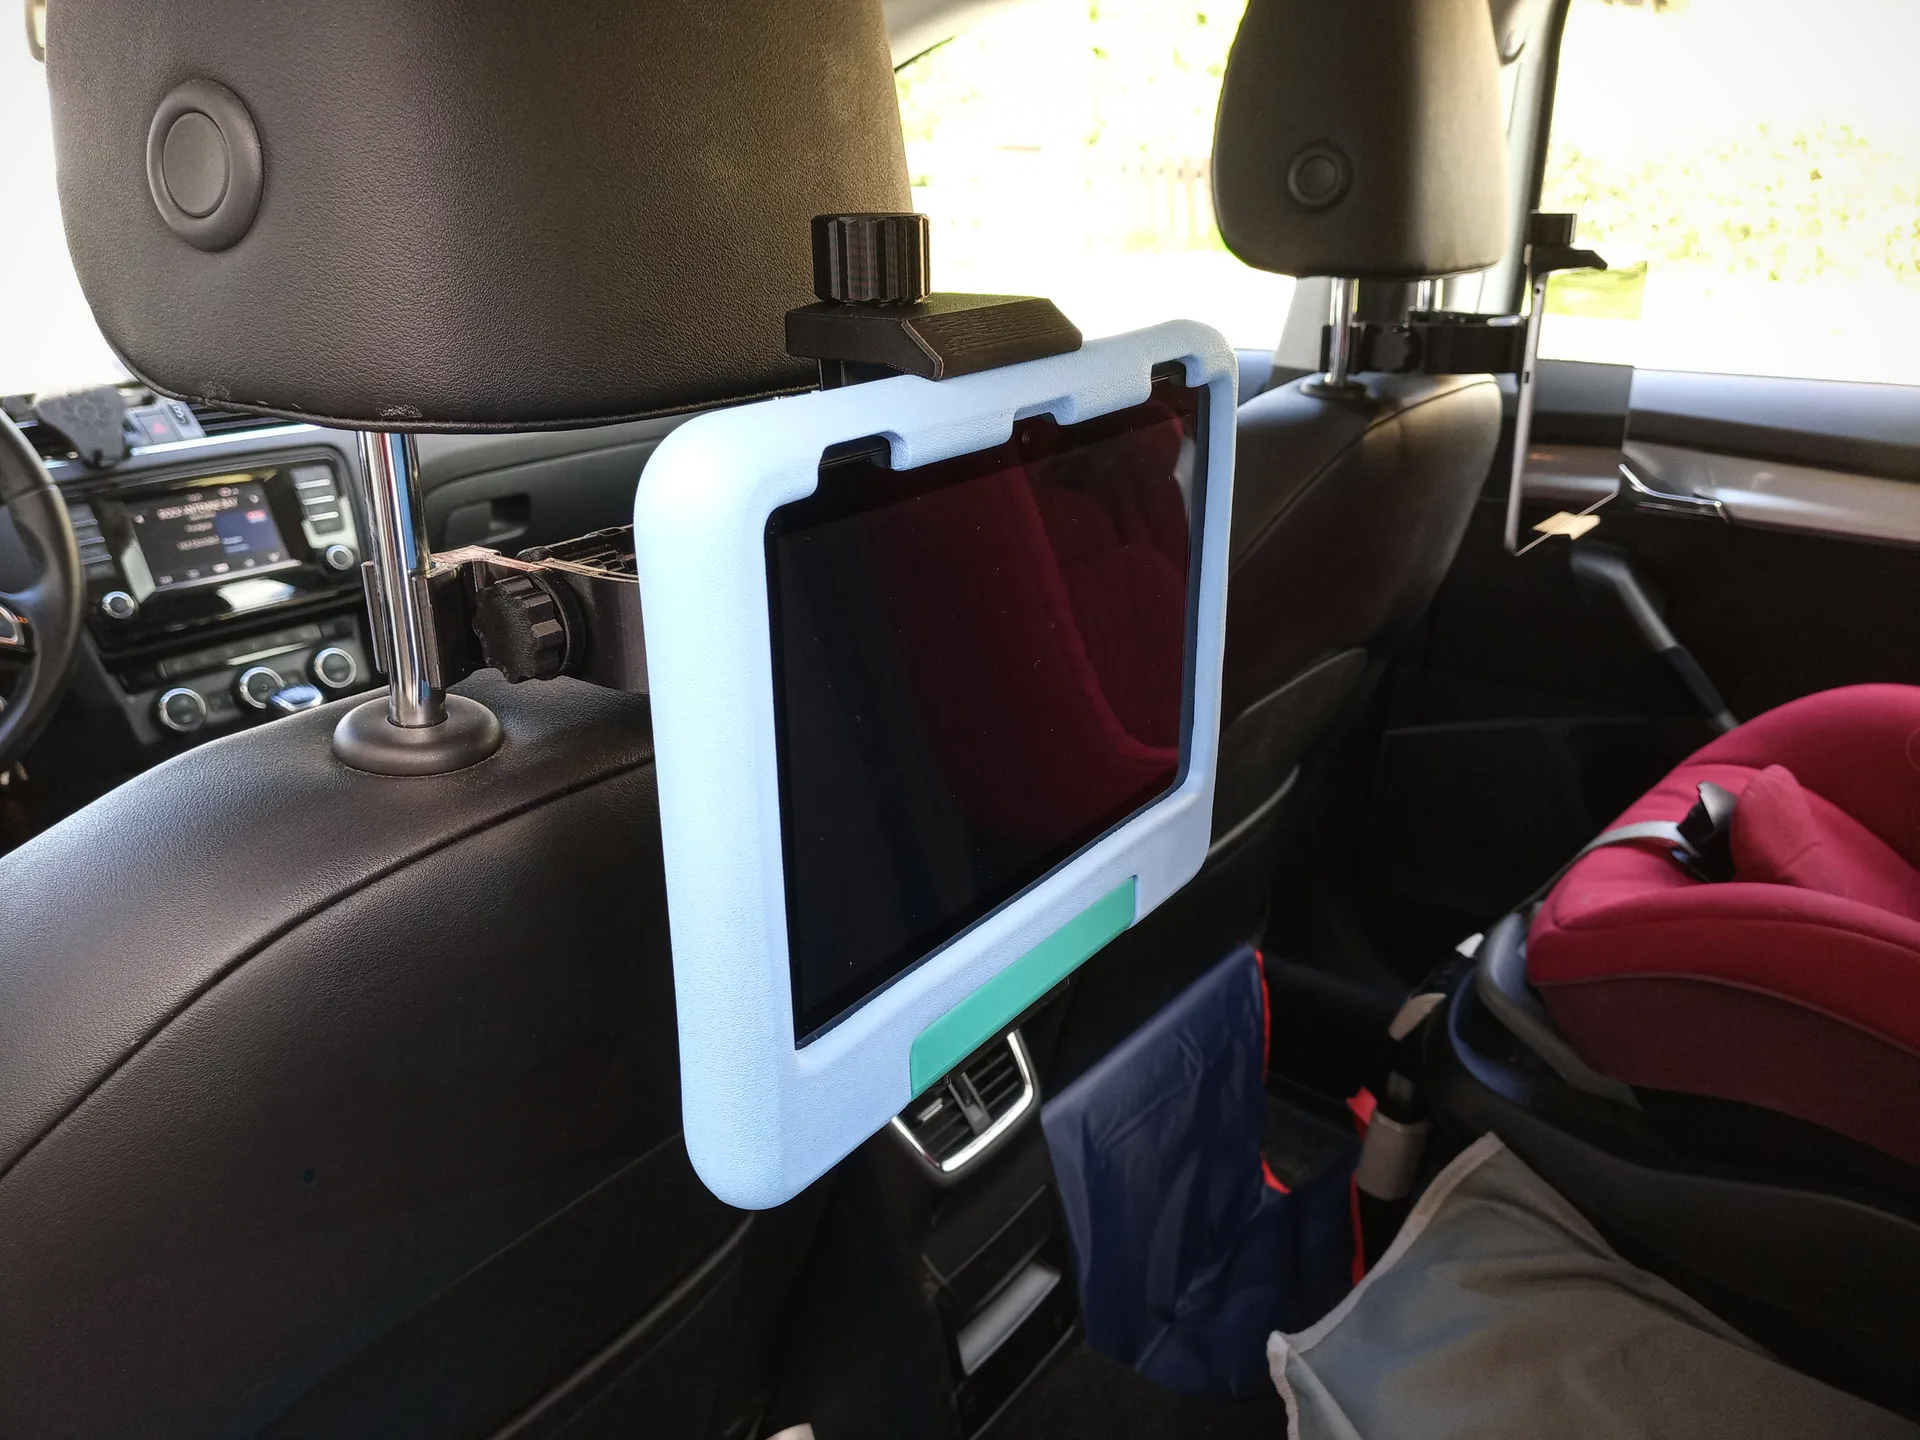 Universal tablet holder for cars/headrest par Bananenminister